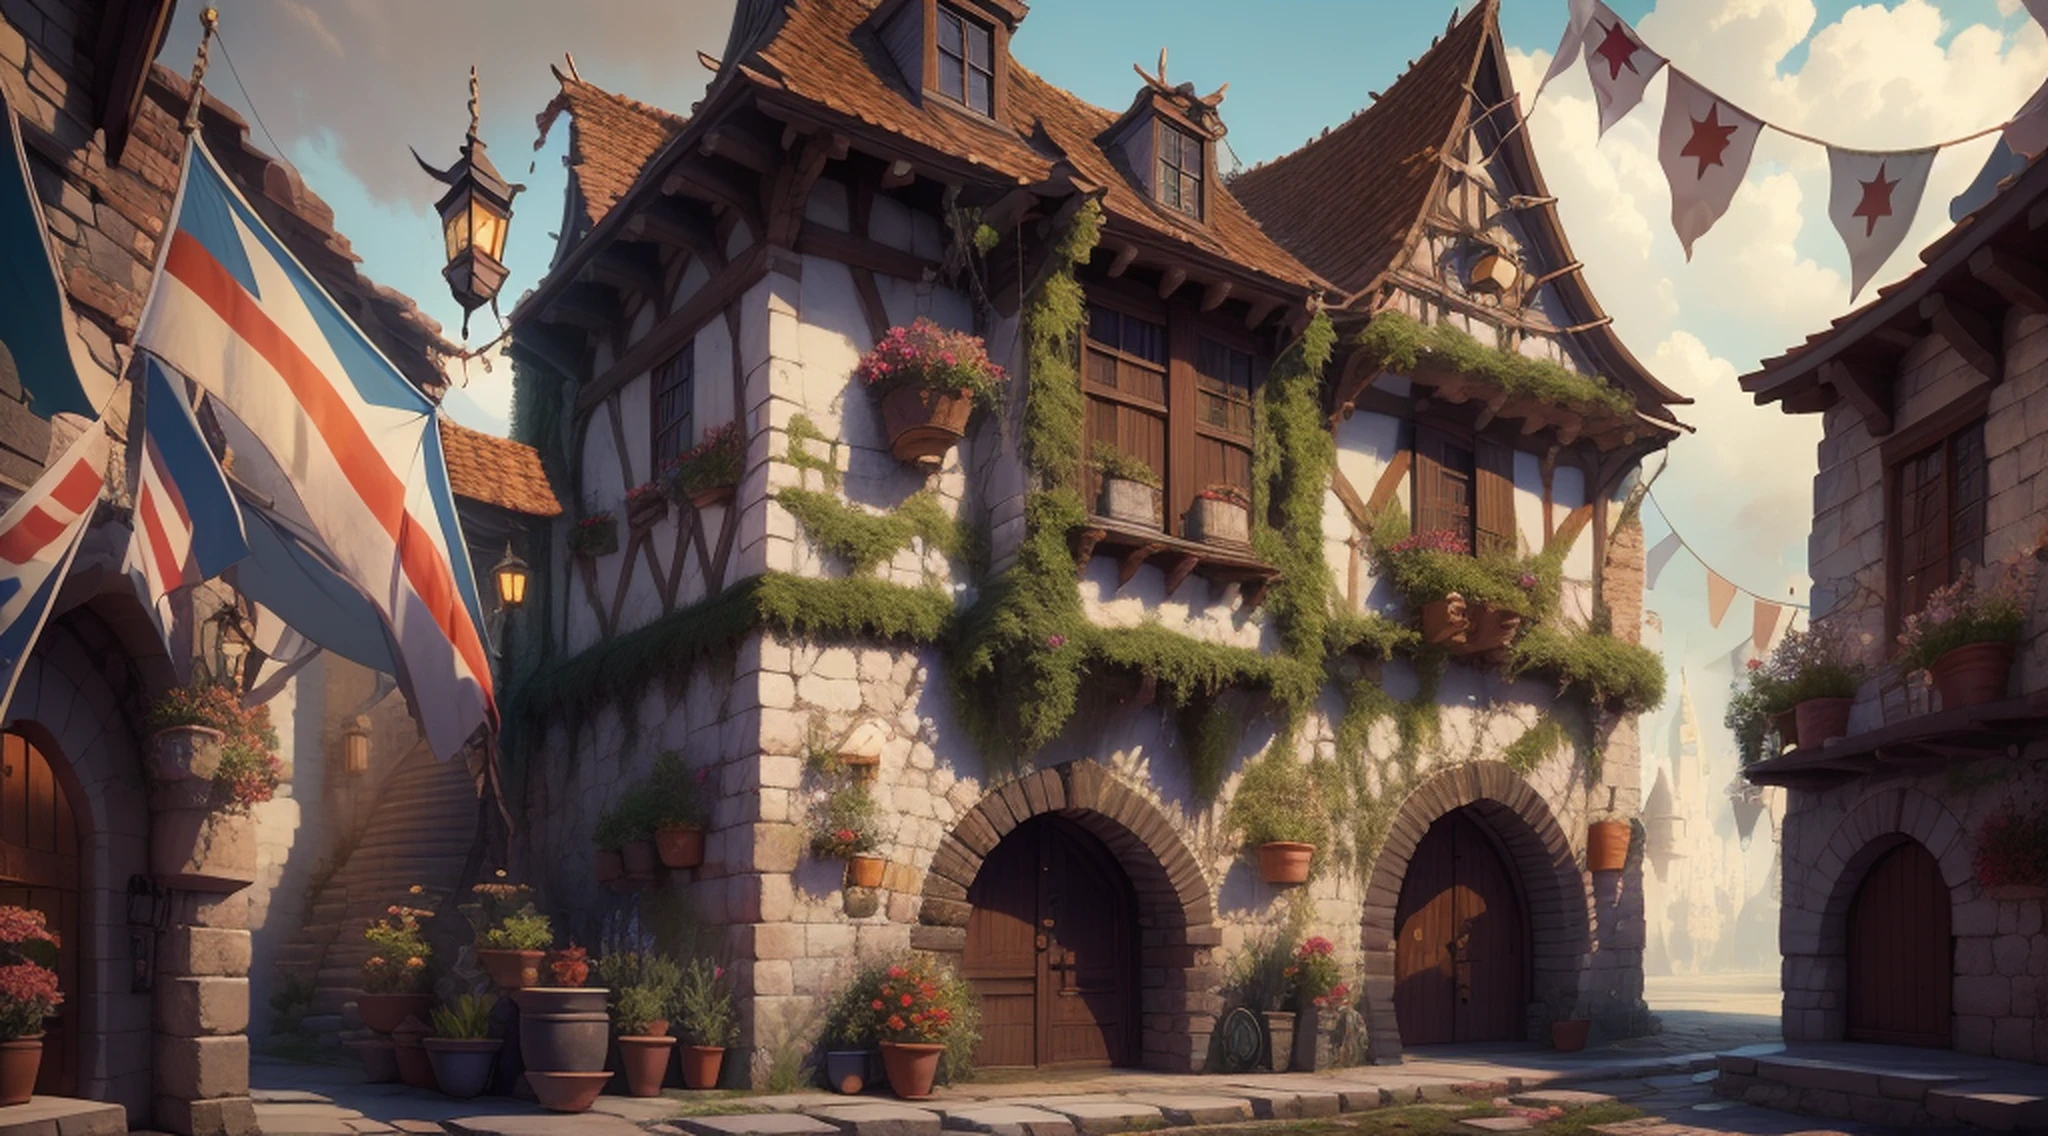 крупный план улицы со зданием и кучей флагов, шумный волшебный город,  Средневековый фантастический город, обстановка города фантазий, Вайтран в  стиле Pixar - SeaArt AI